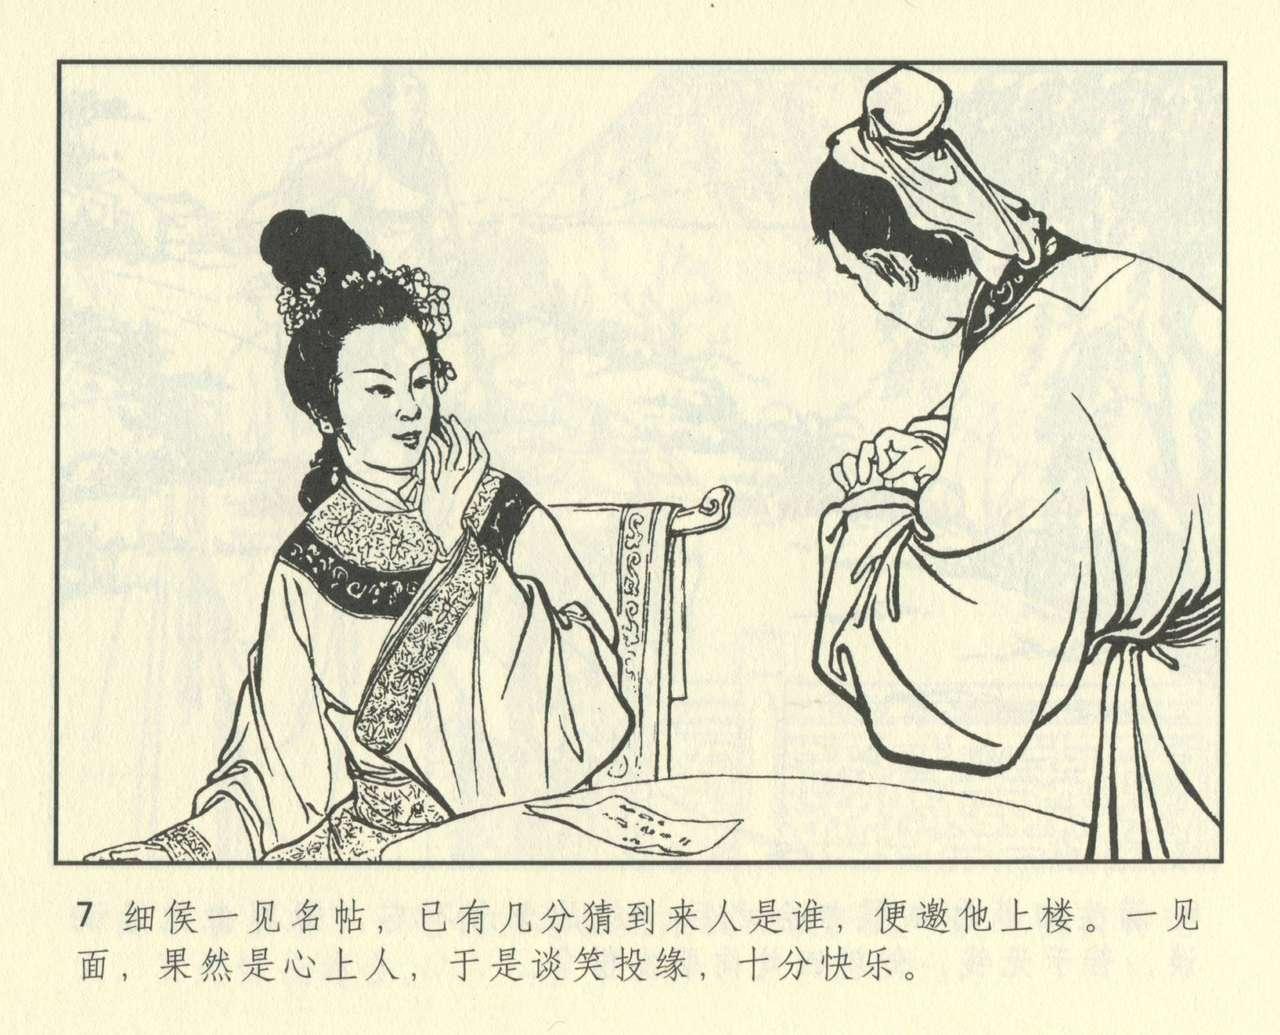 聊斋志异 张玮等绘 天津人民美术出版社 卷二十一 ~ 三十 418